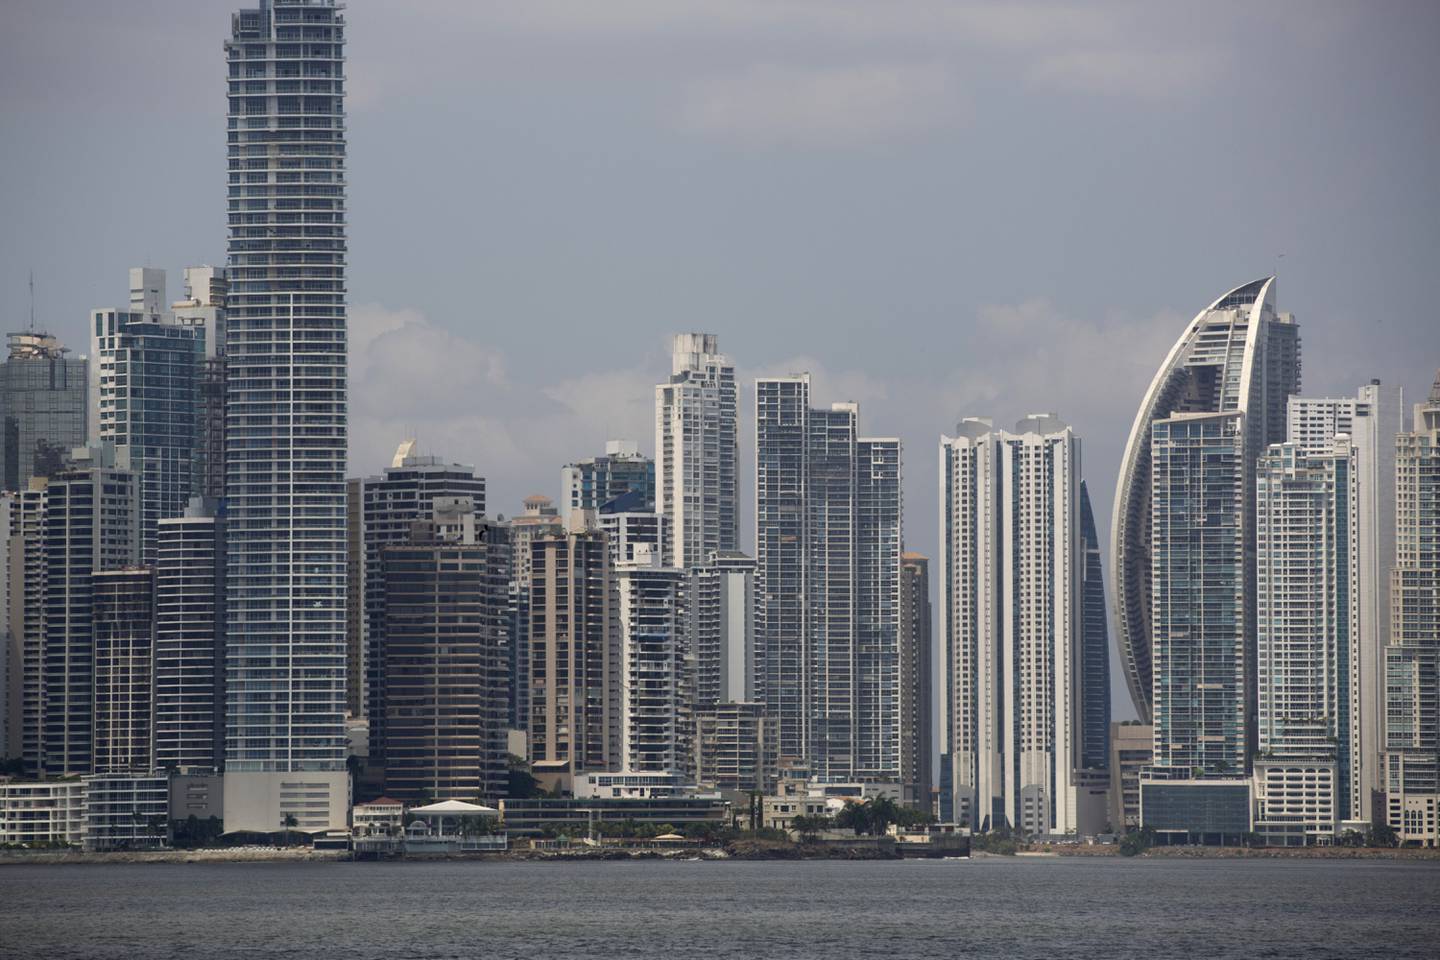 Panamá también continúa dependiendo de agentes residentes que están mal supervisados, y las empresas panameñas continúan siendo vistas como un arma secreta para cometer delitos y lavar dinero, dice Transparencia Internacional.